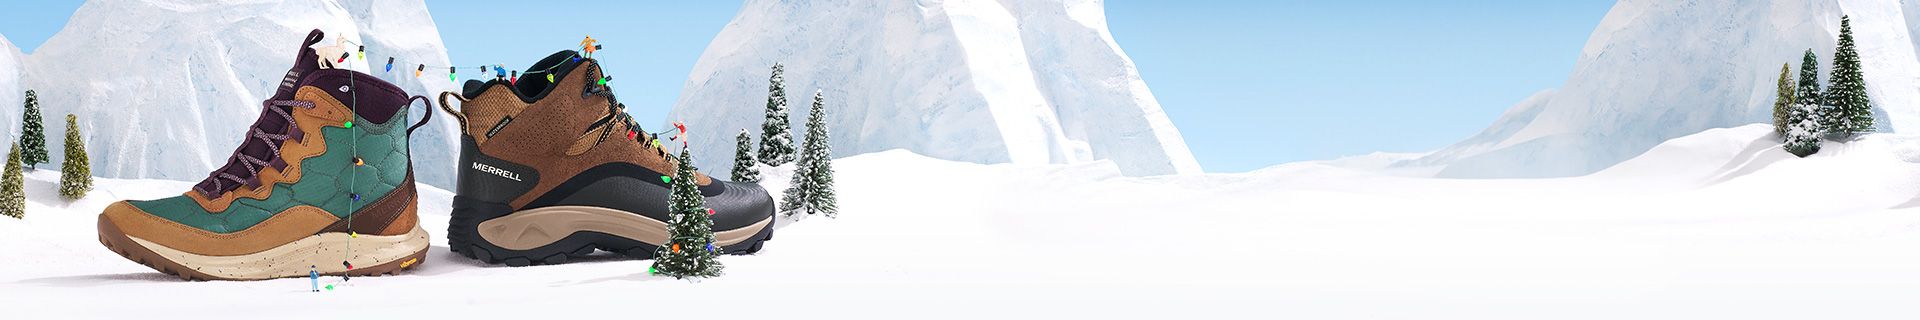 Une paire de chaussures dans la neige avec une montagne enneigée couverte d'arbres en arrière-plan.